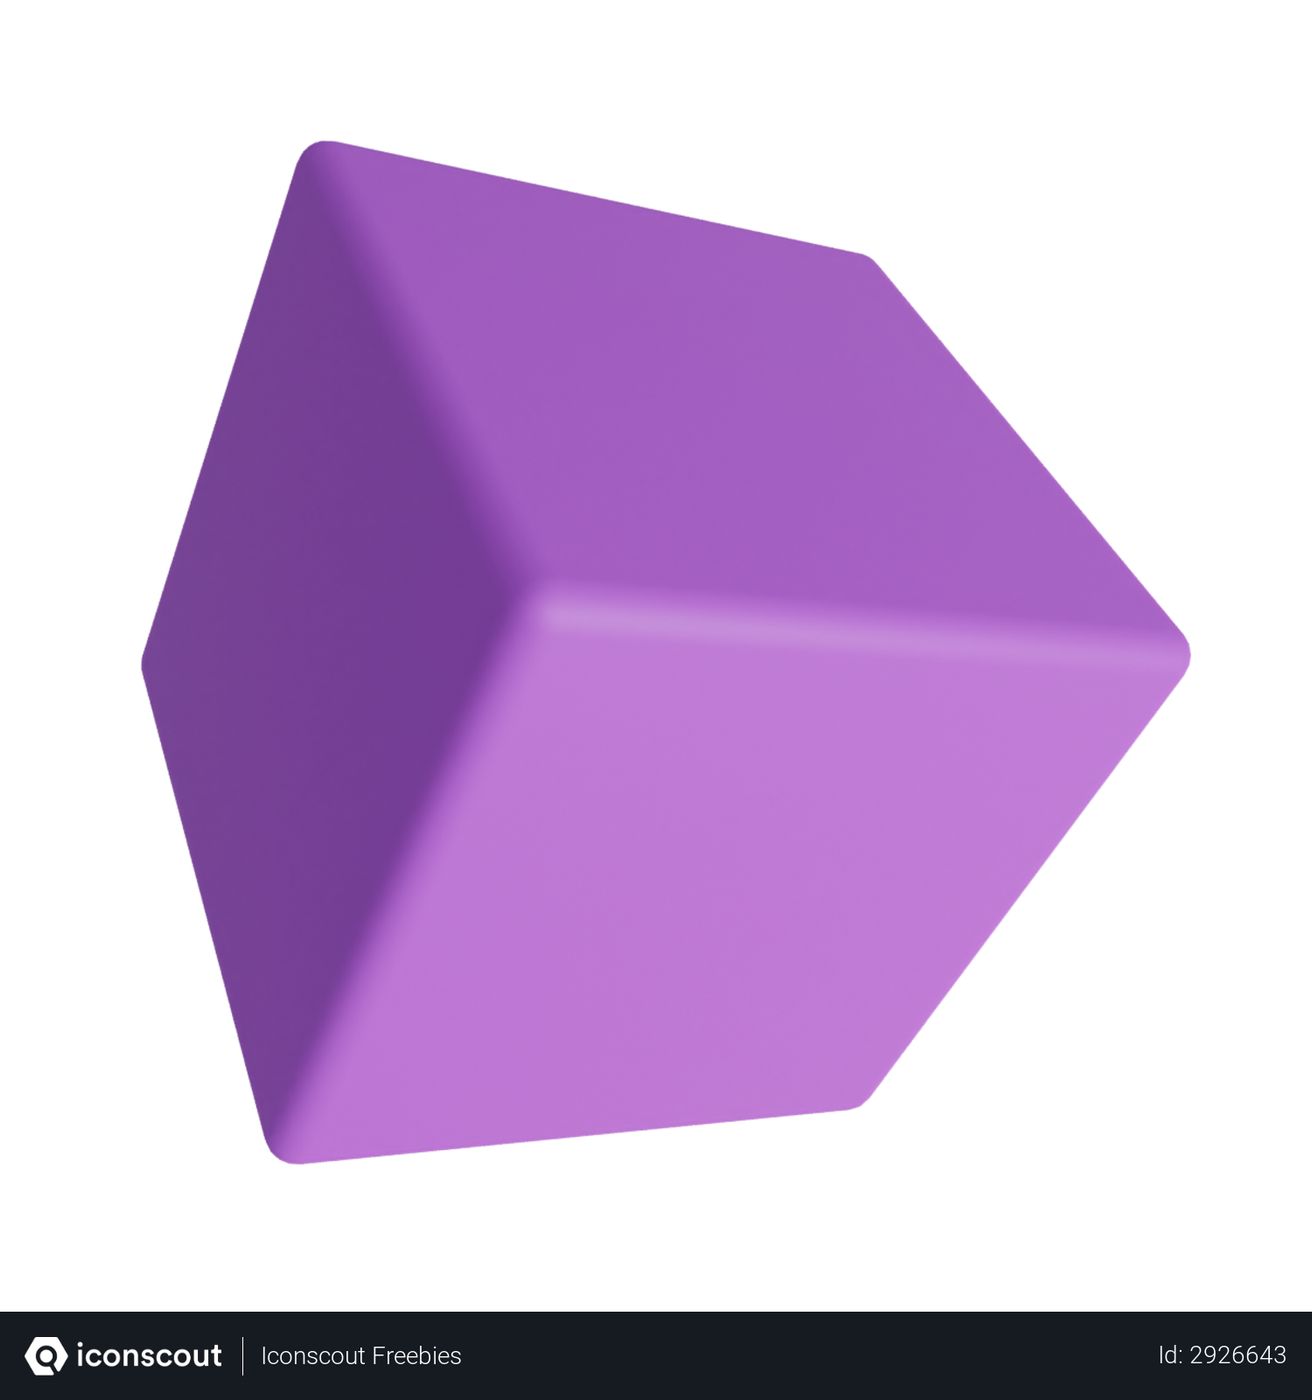 Free Cube 3D Illustration download in PNG, OBJ or Blend format